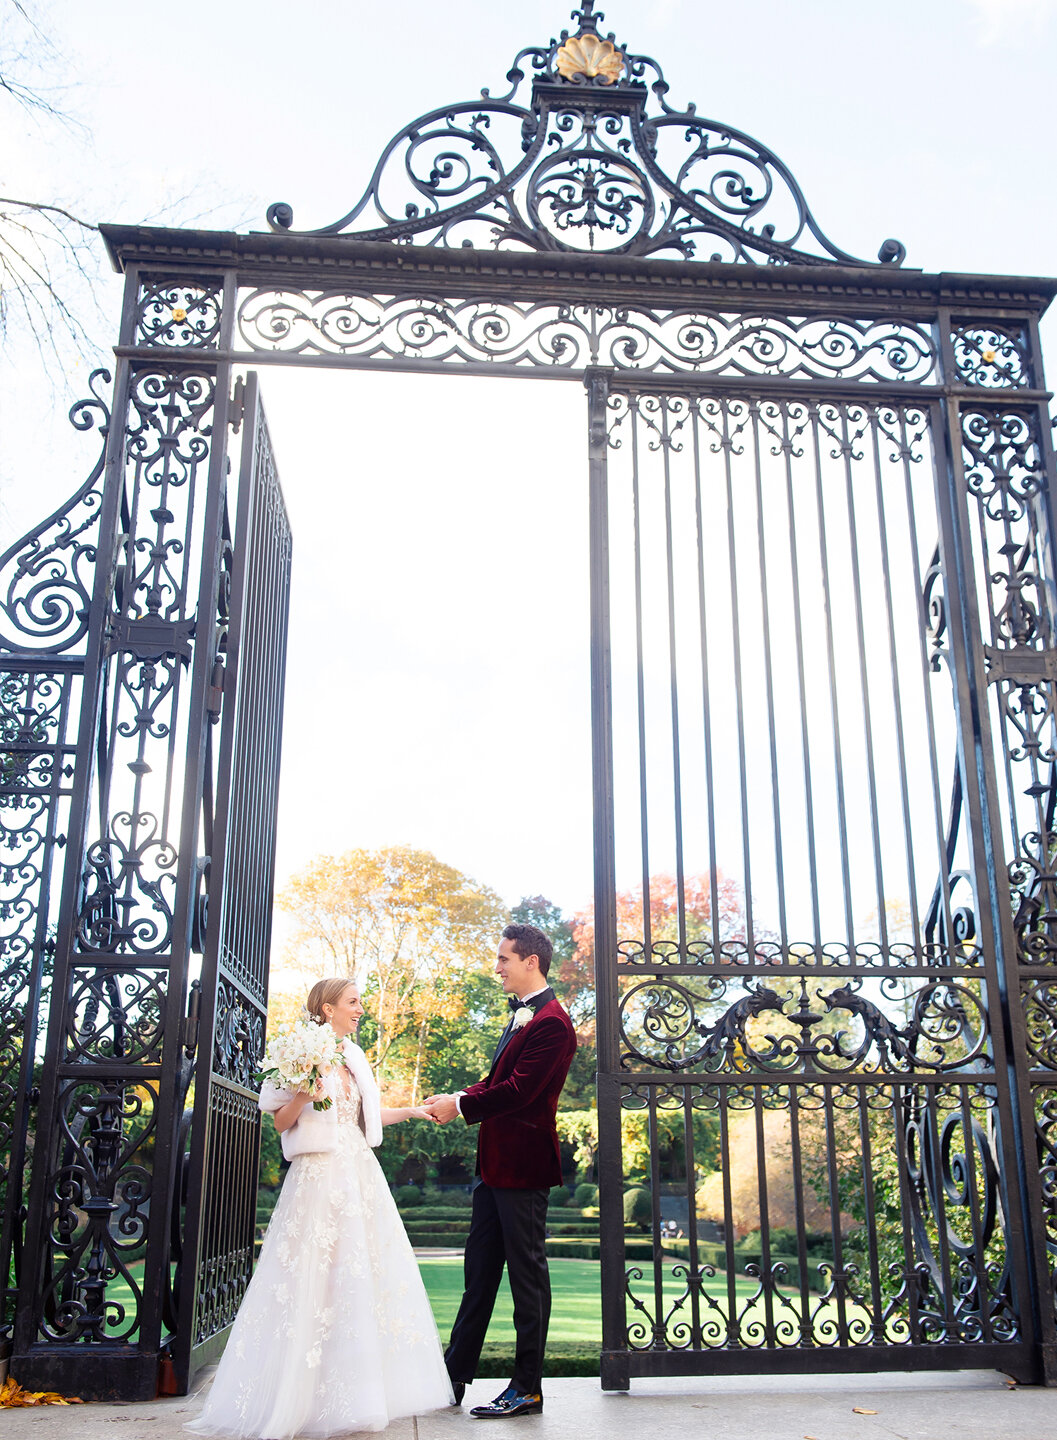 Newlyweds at Vanderbilt Gate Conservatory Garden